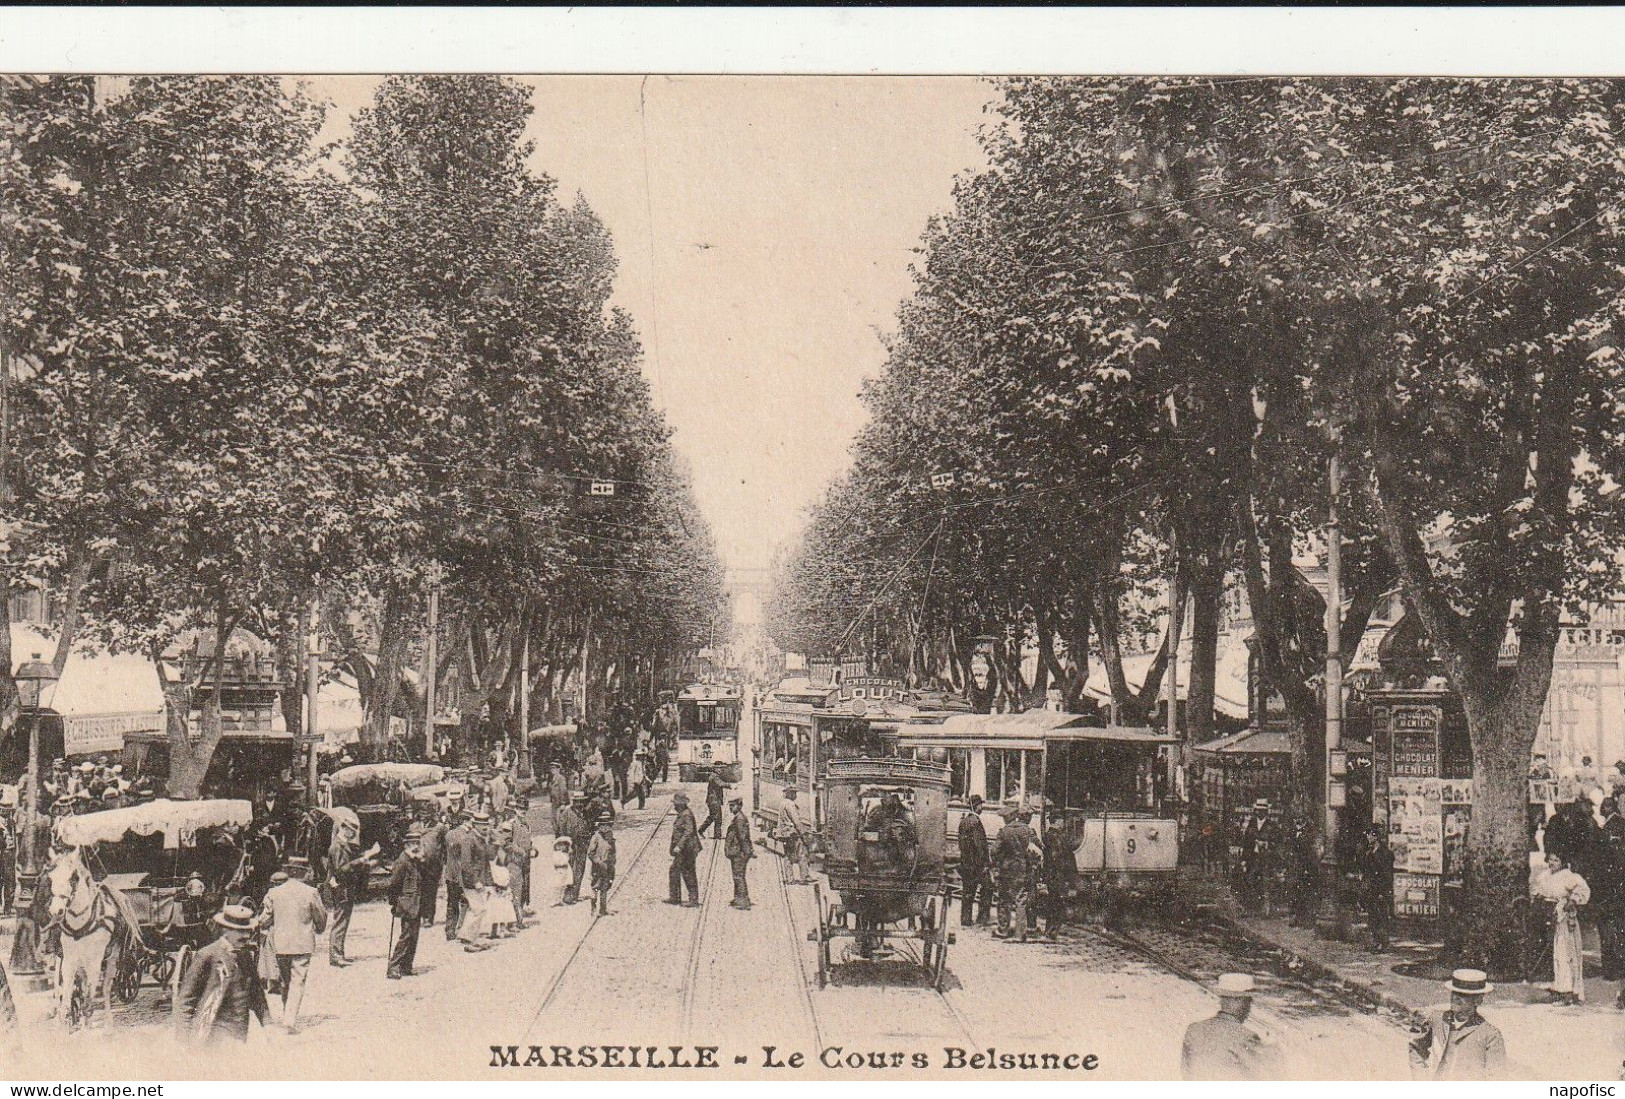 13-Marseille Le Cours Belsunce - Canebière, Stadtzentrum